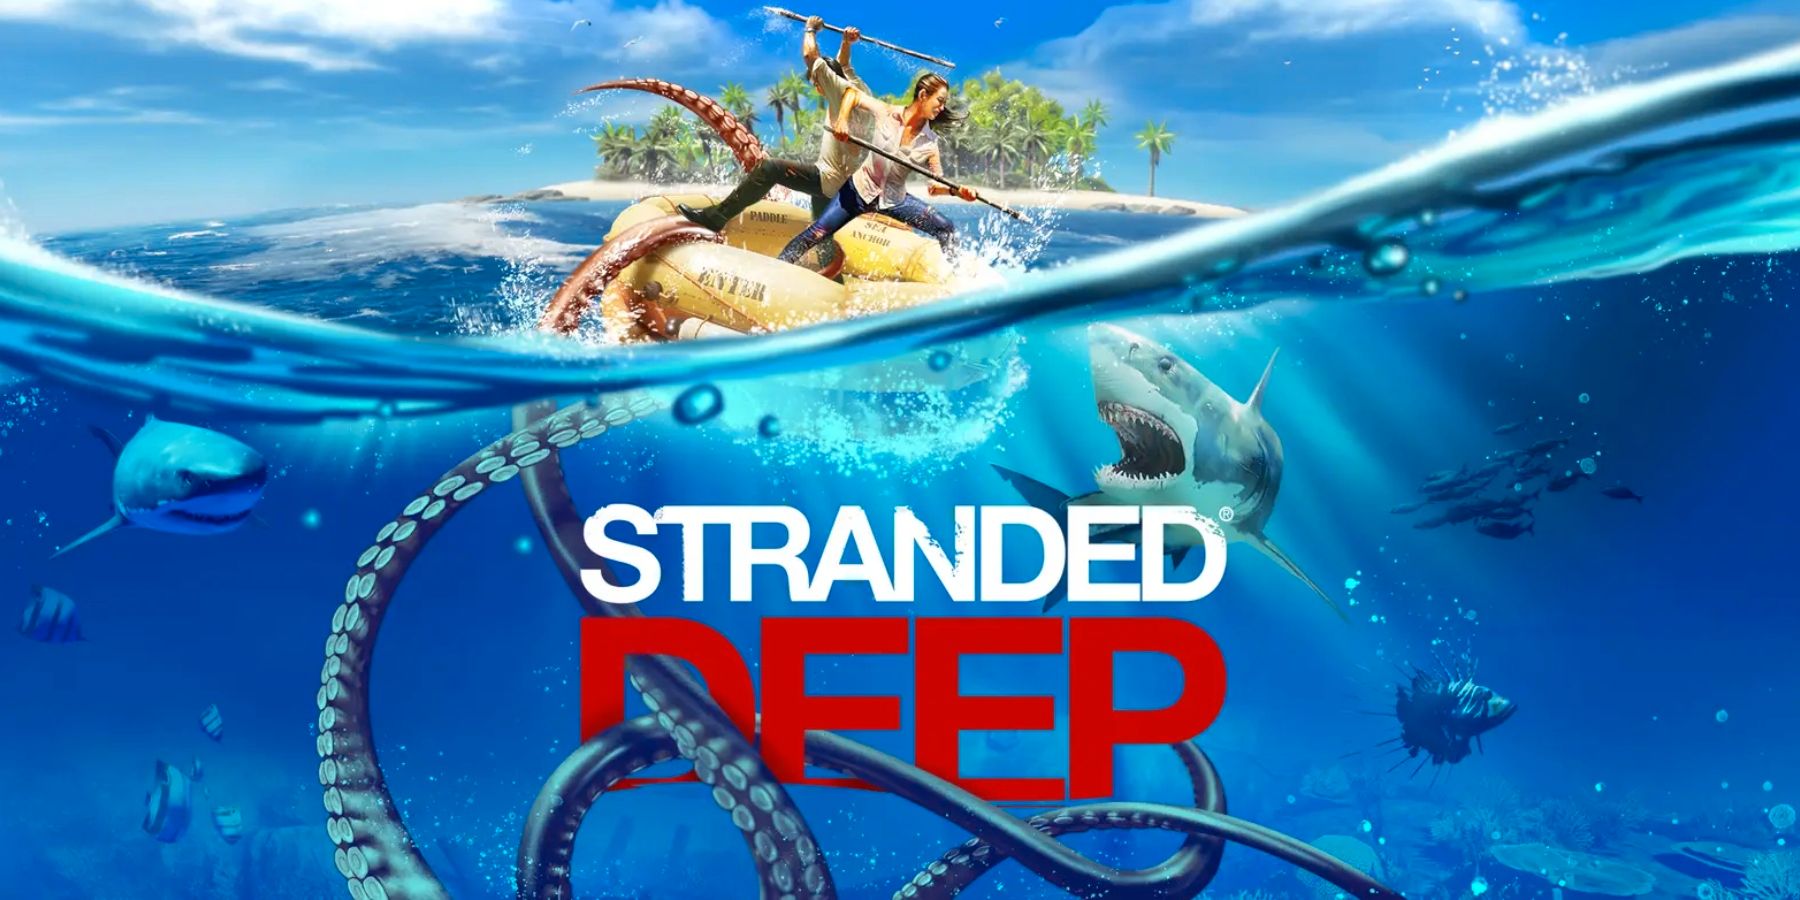 A Stranded Deep holnap érkezik egy ingyenes frissítés útján online co-op